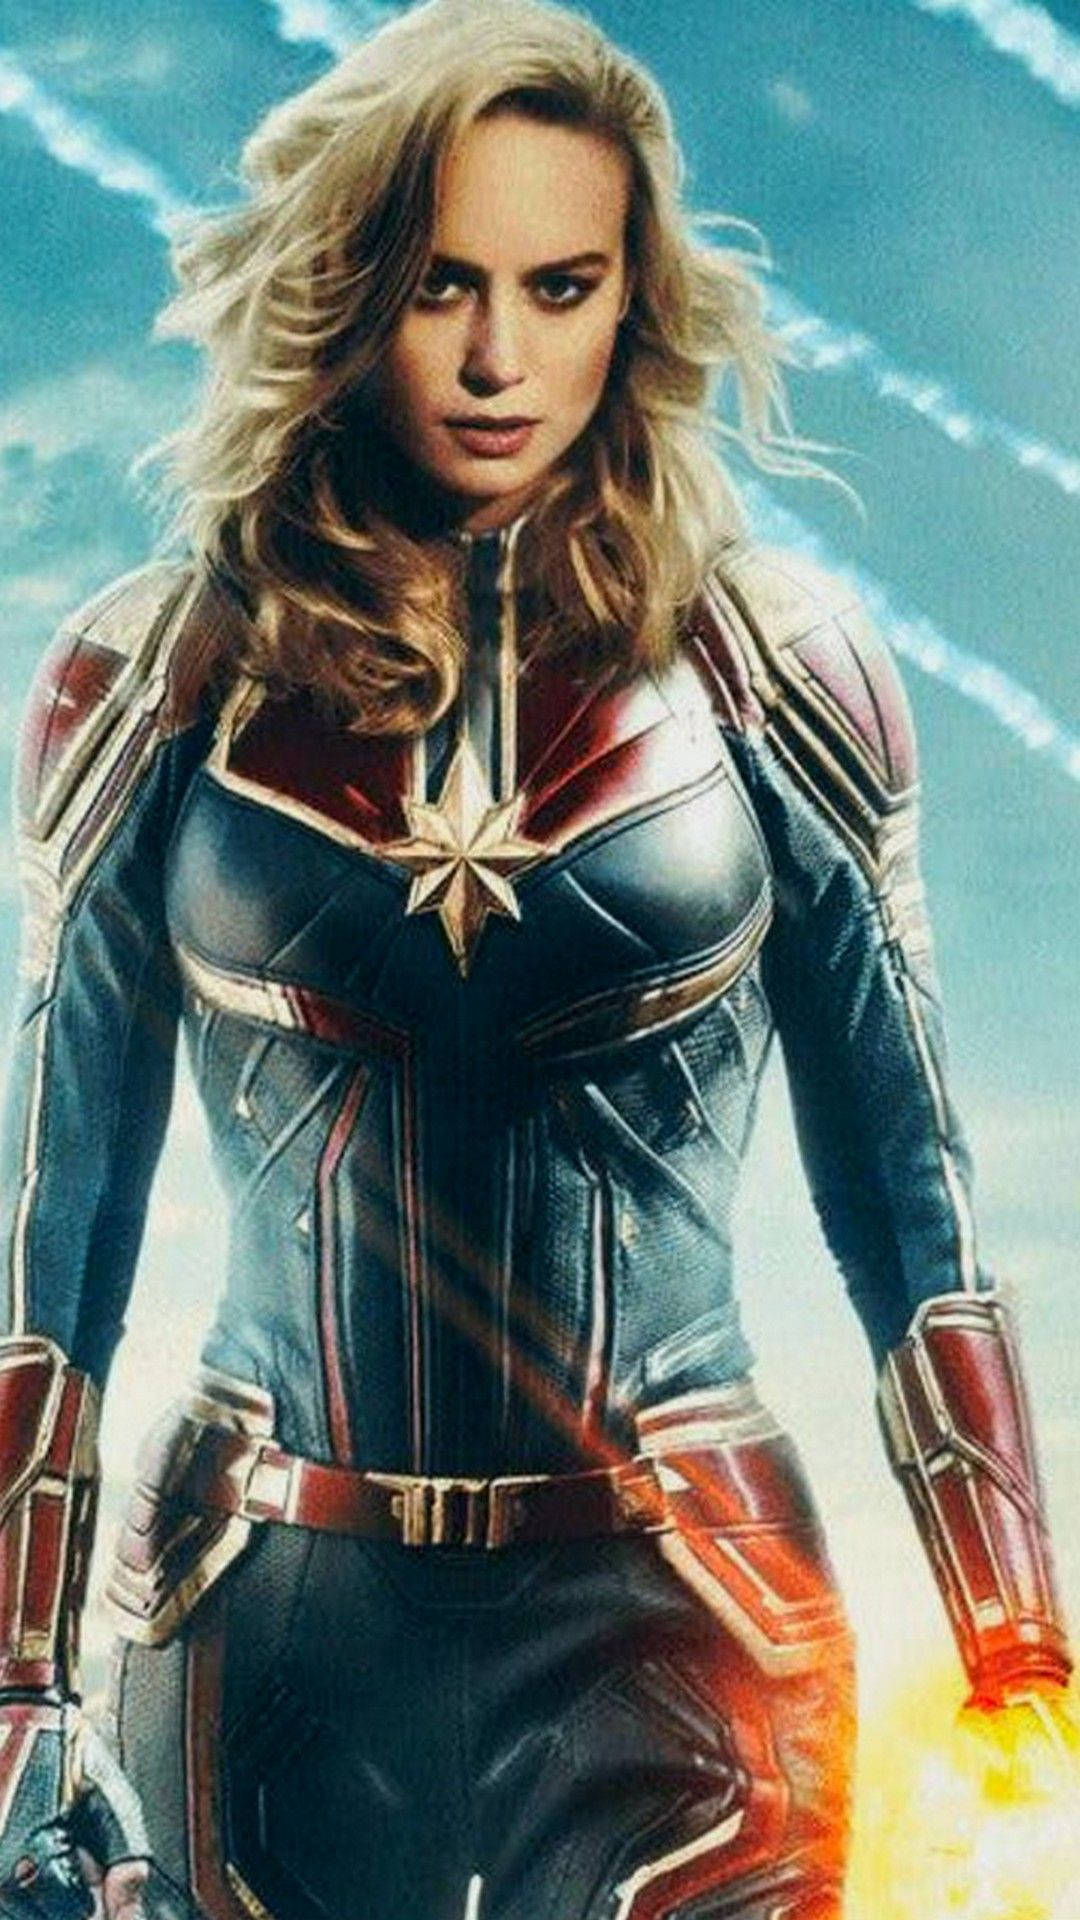 Avengers: Endgame - Captain Marvel Superhero 2K wallpaper download